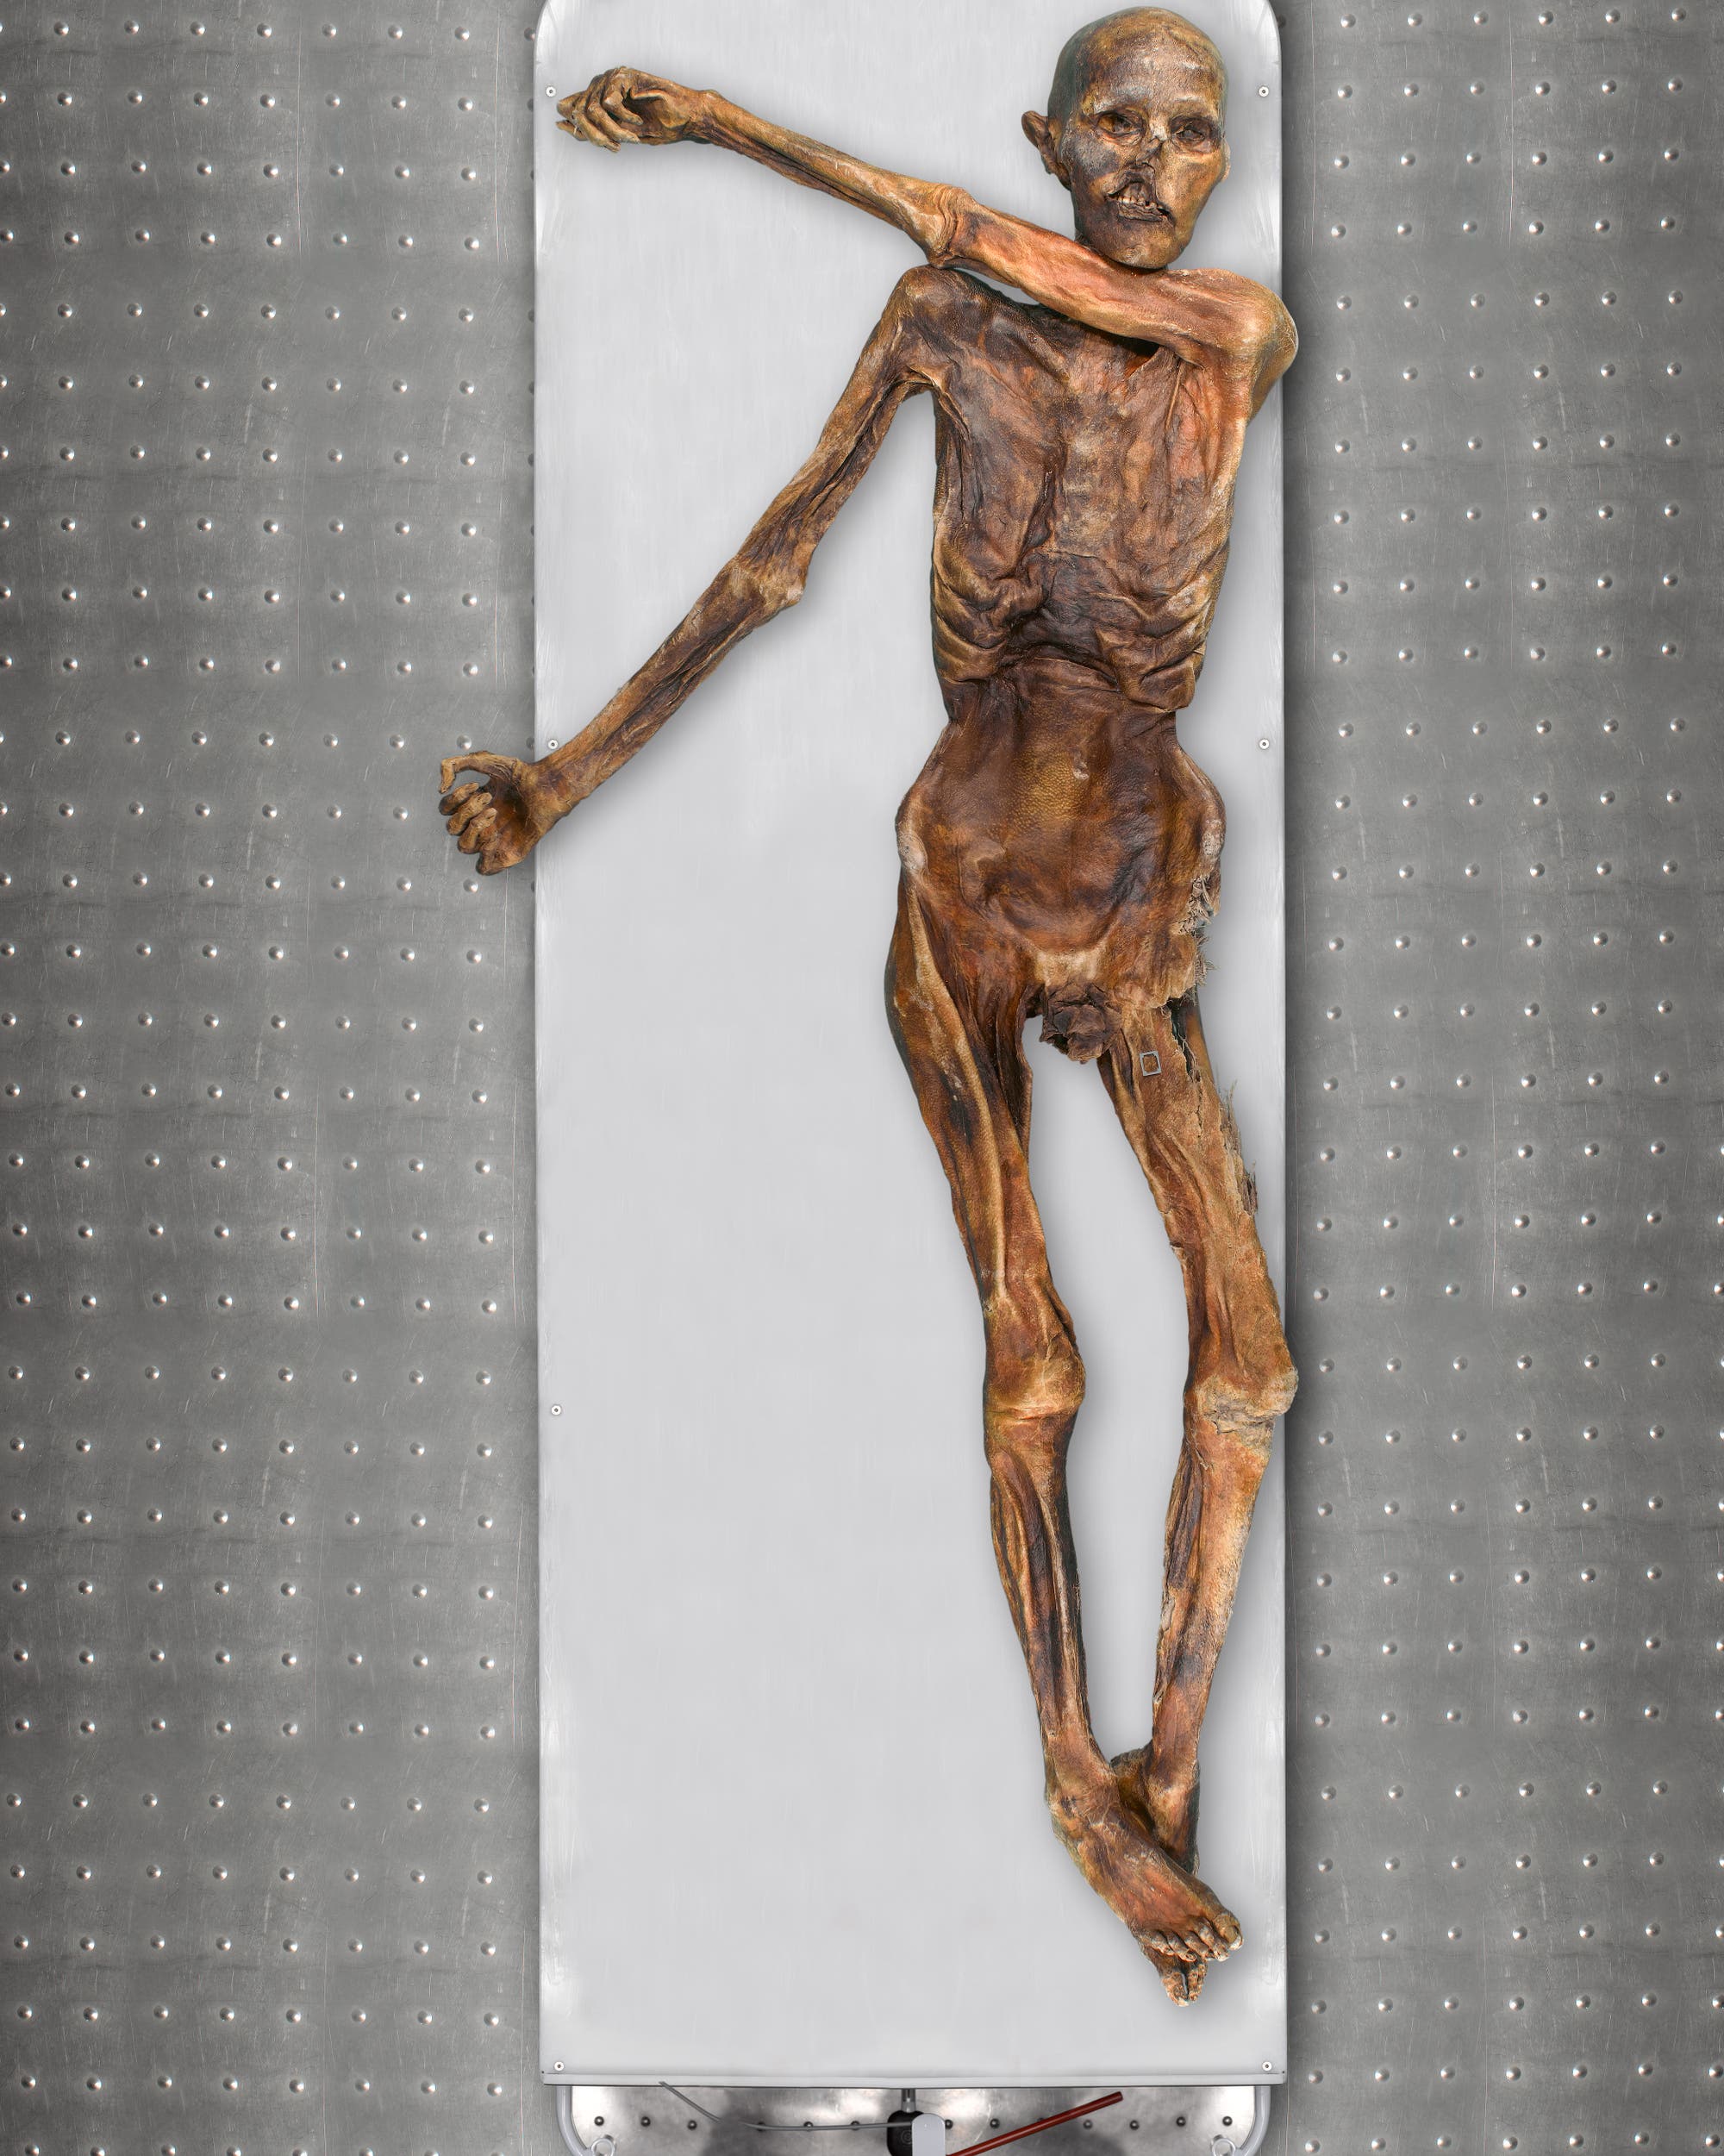 Ötzi wurde 1991 entdeckt. Heute befindet sich die 5300 Jahre alte Mumie im Südtiroler Archäologiemuseum in Bozen.